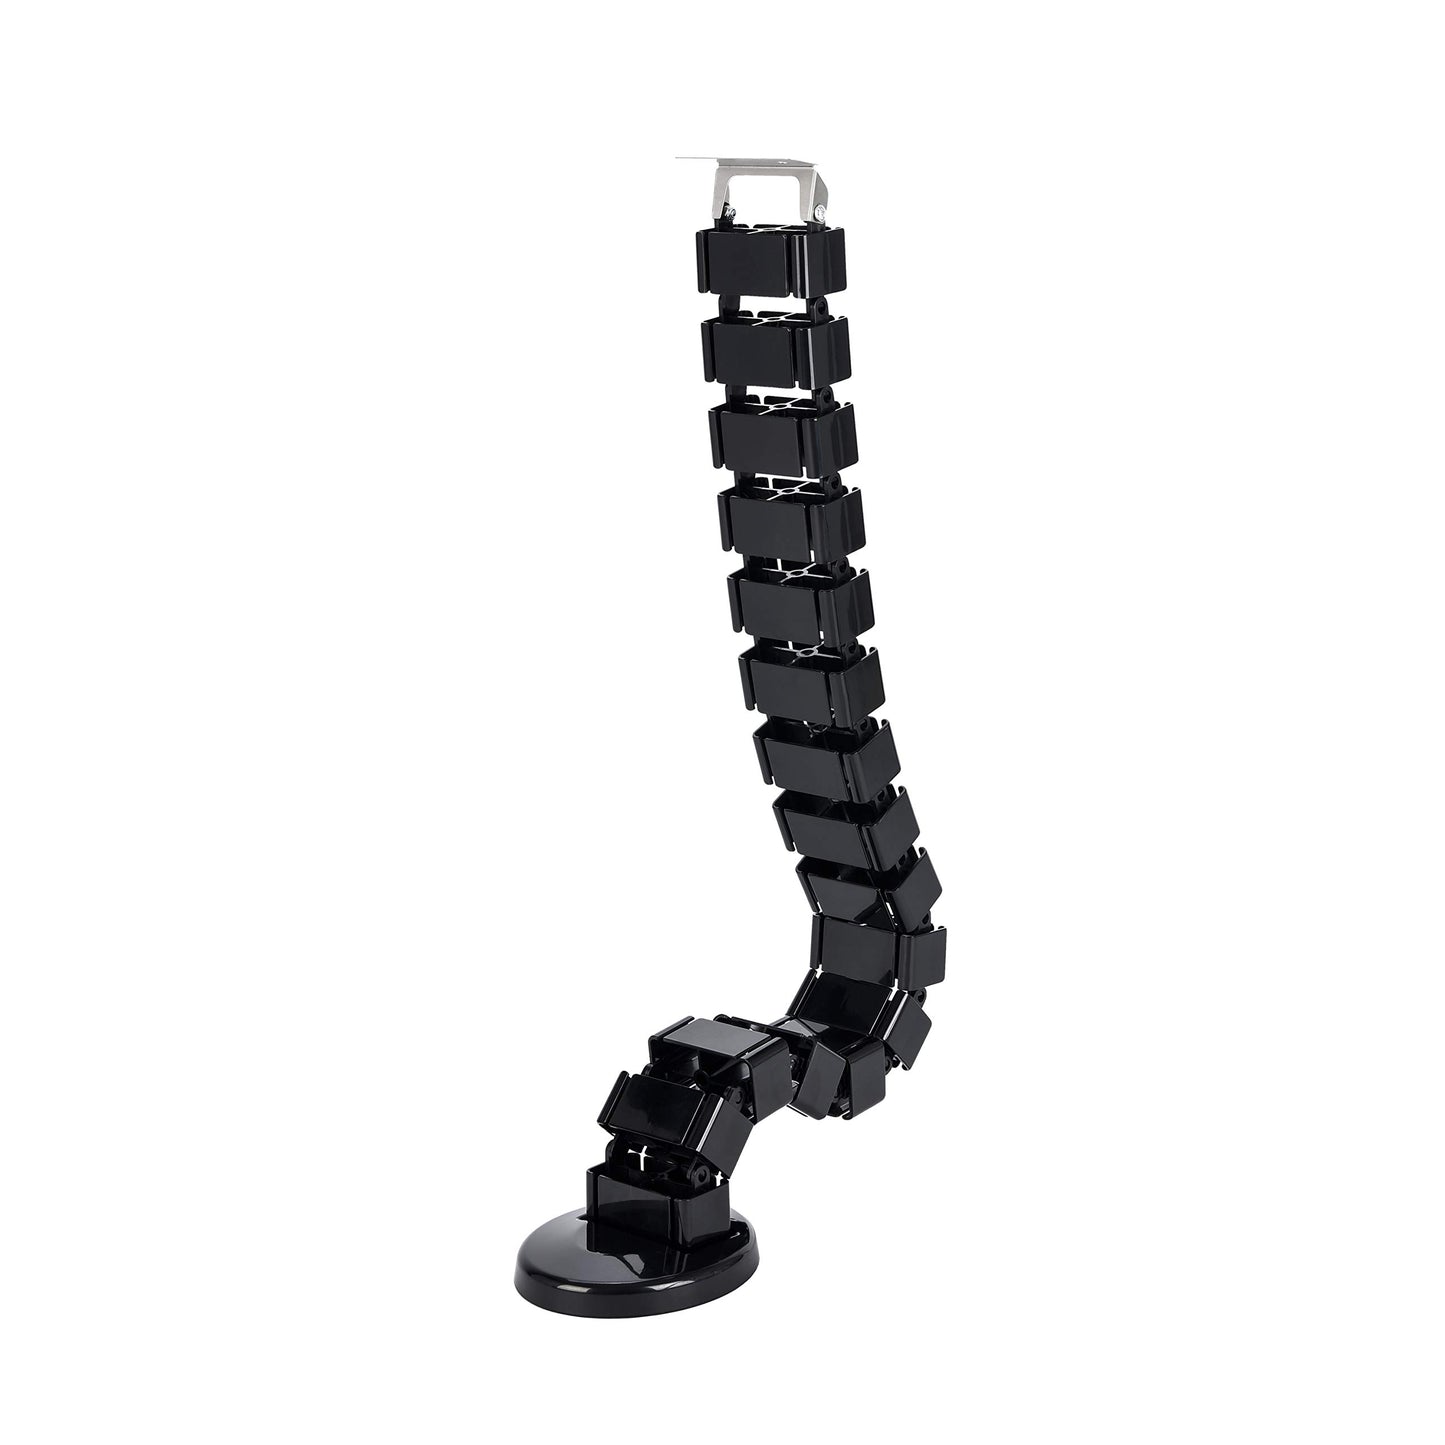 Vwindesk Vertebrae Cable Management Spine Kit | Height Adjustable Desk Quad Entry Wire Organizer, Black